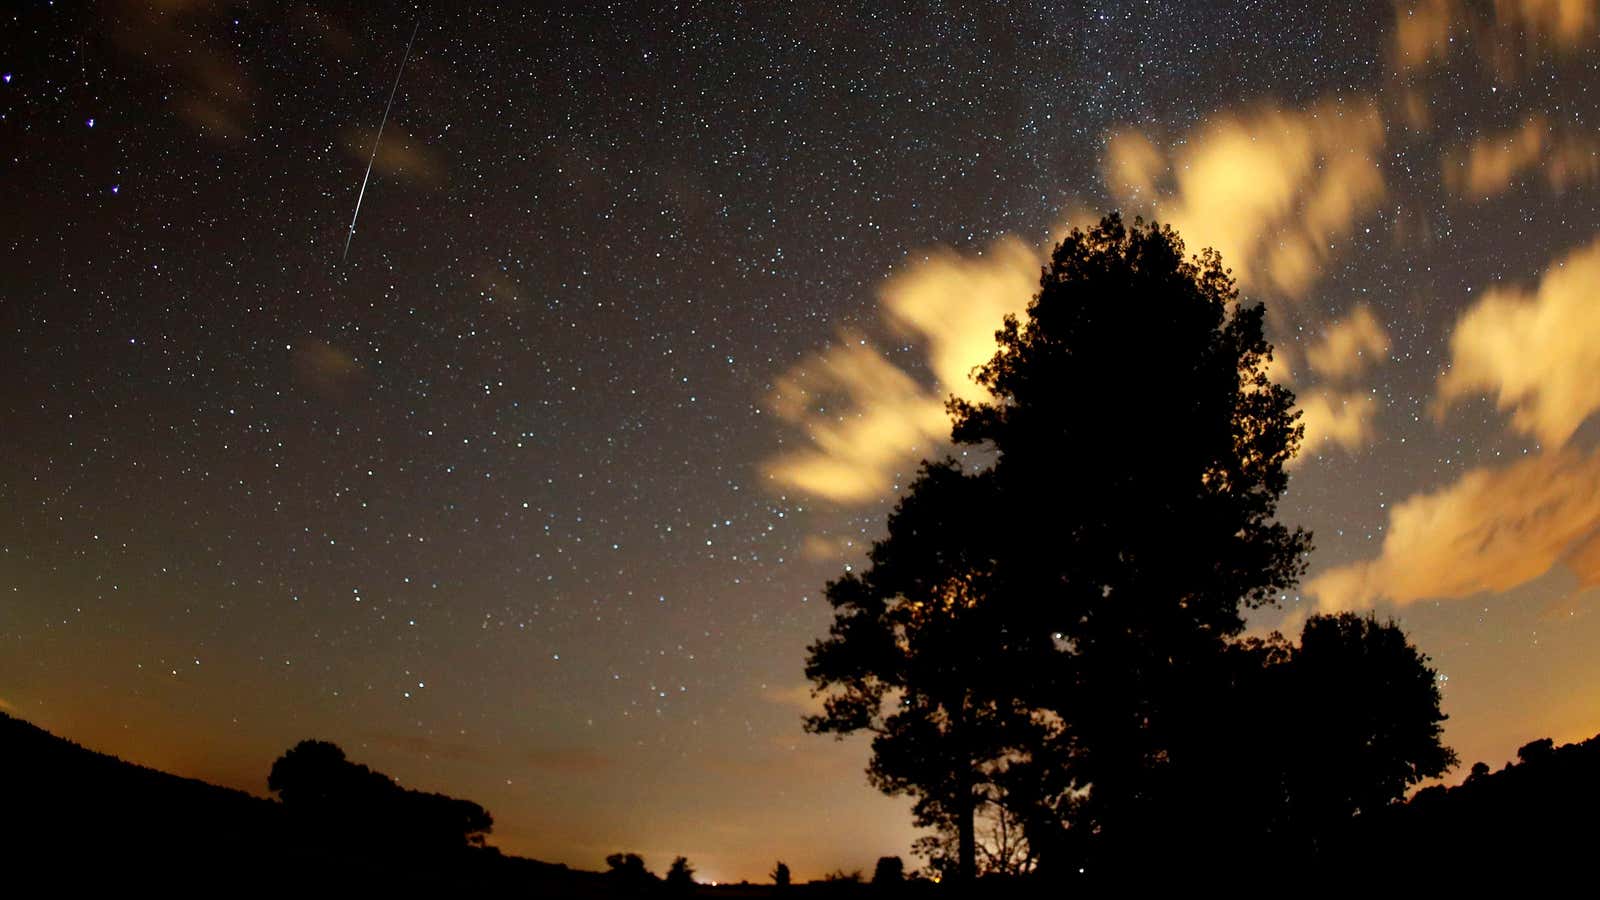 Last year’s Perseid meteor shower, as seen from Premnitz, near Berlin.